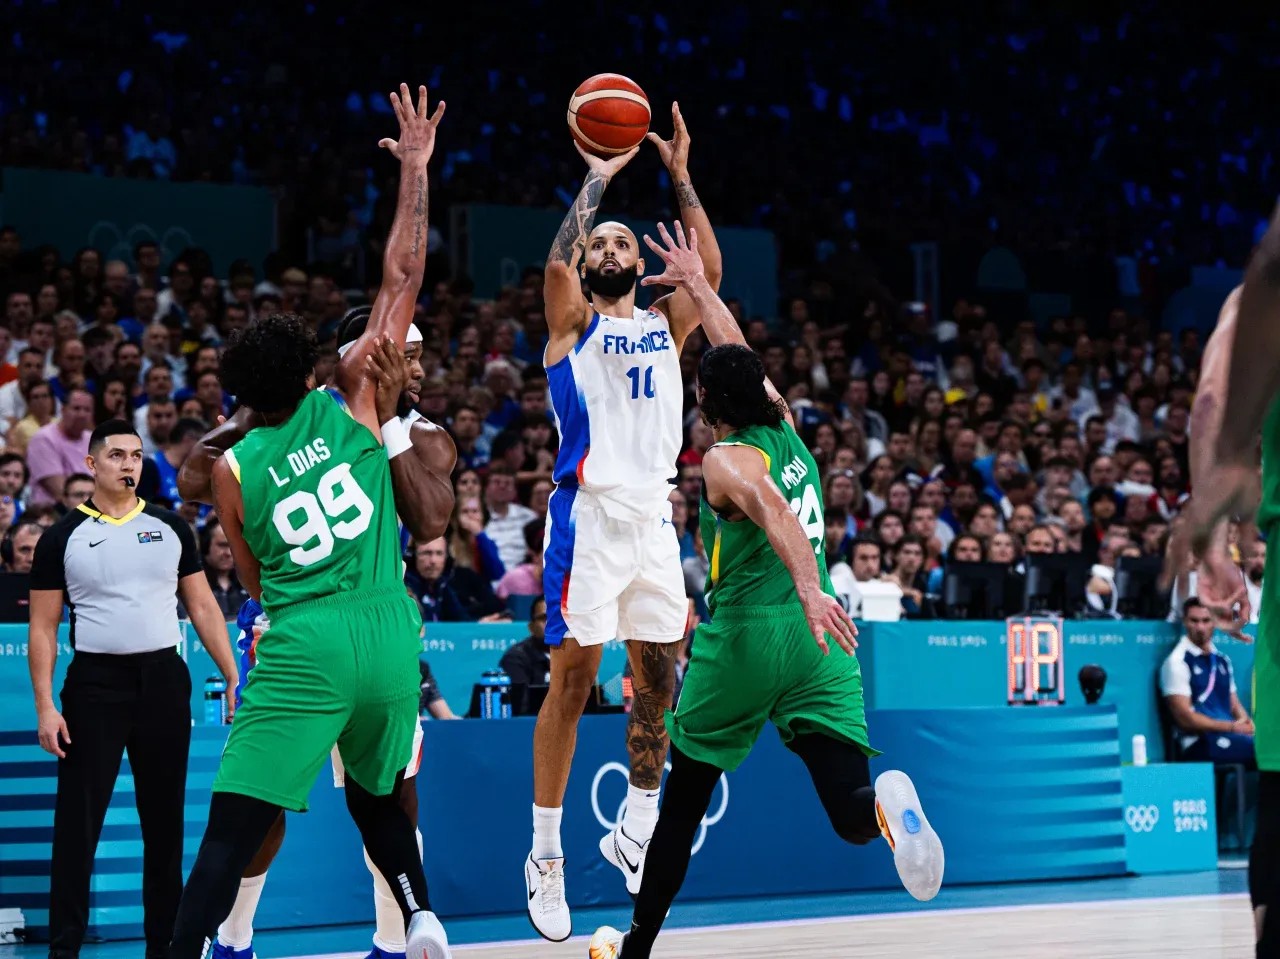 Brasil começa na frente, mas perde para a França na estreia do basquete masculino